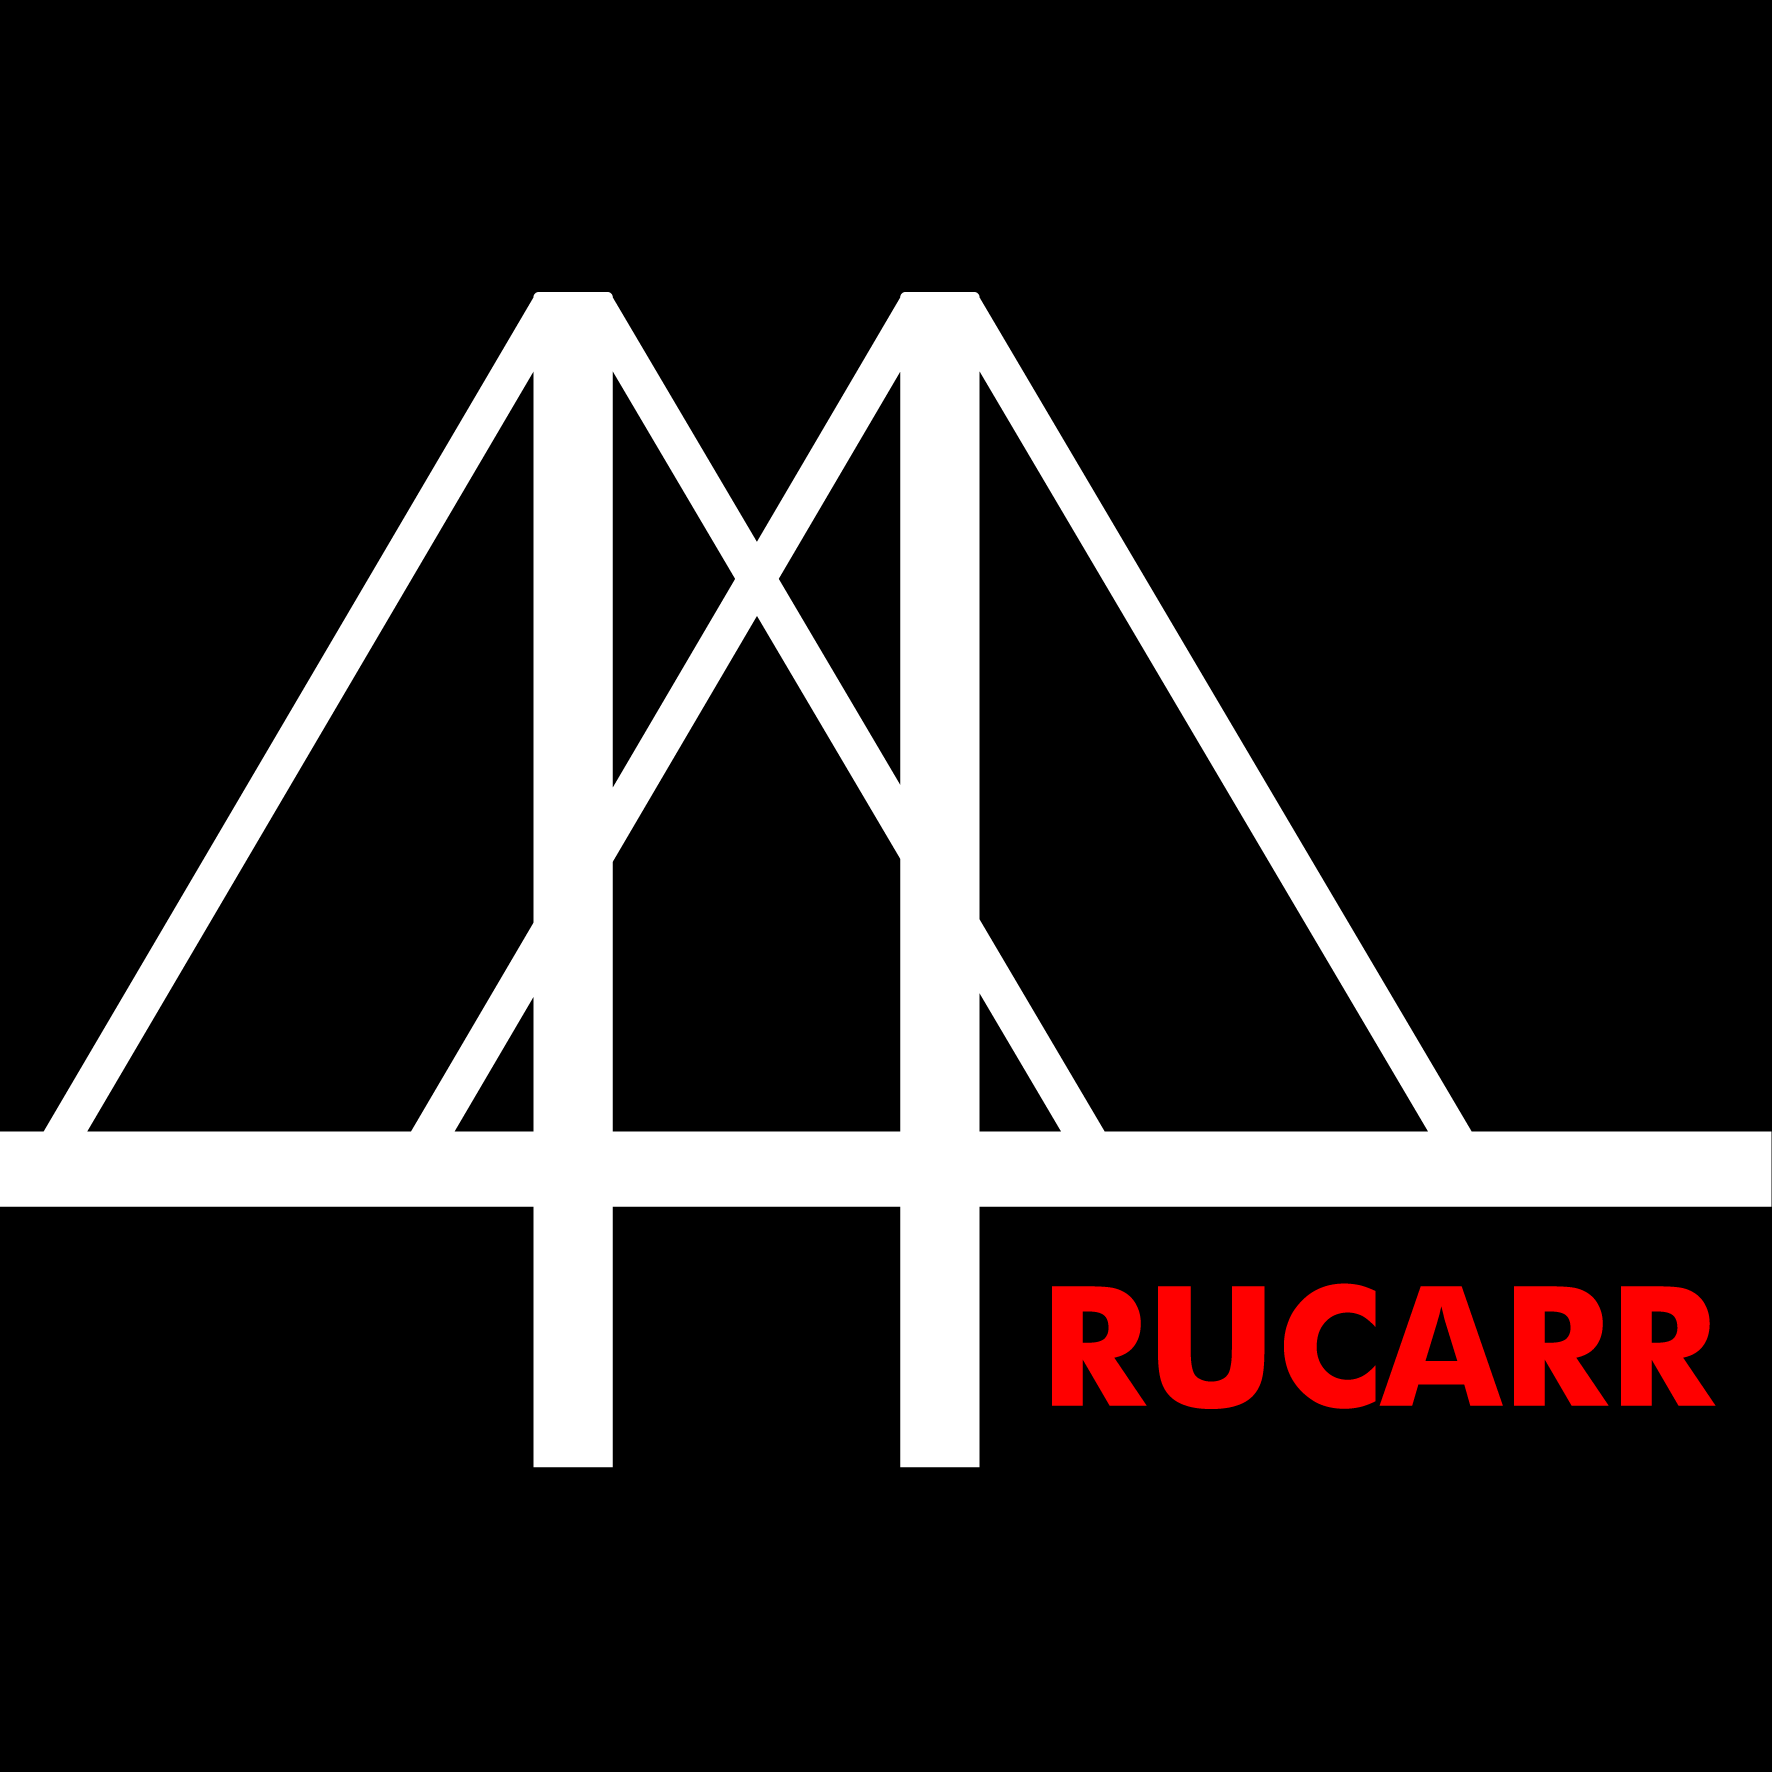 Russia, Ukraine and the Caucasus Regional Research (RUCARR)